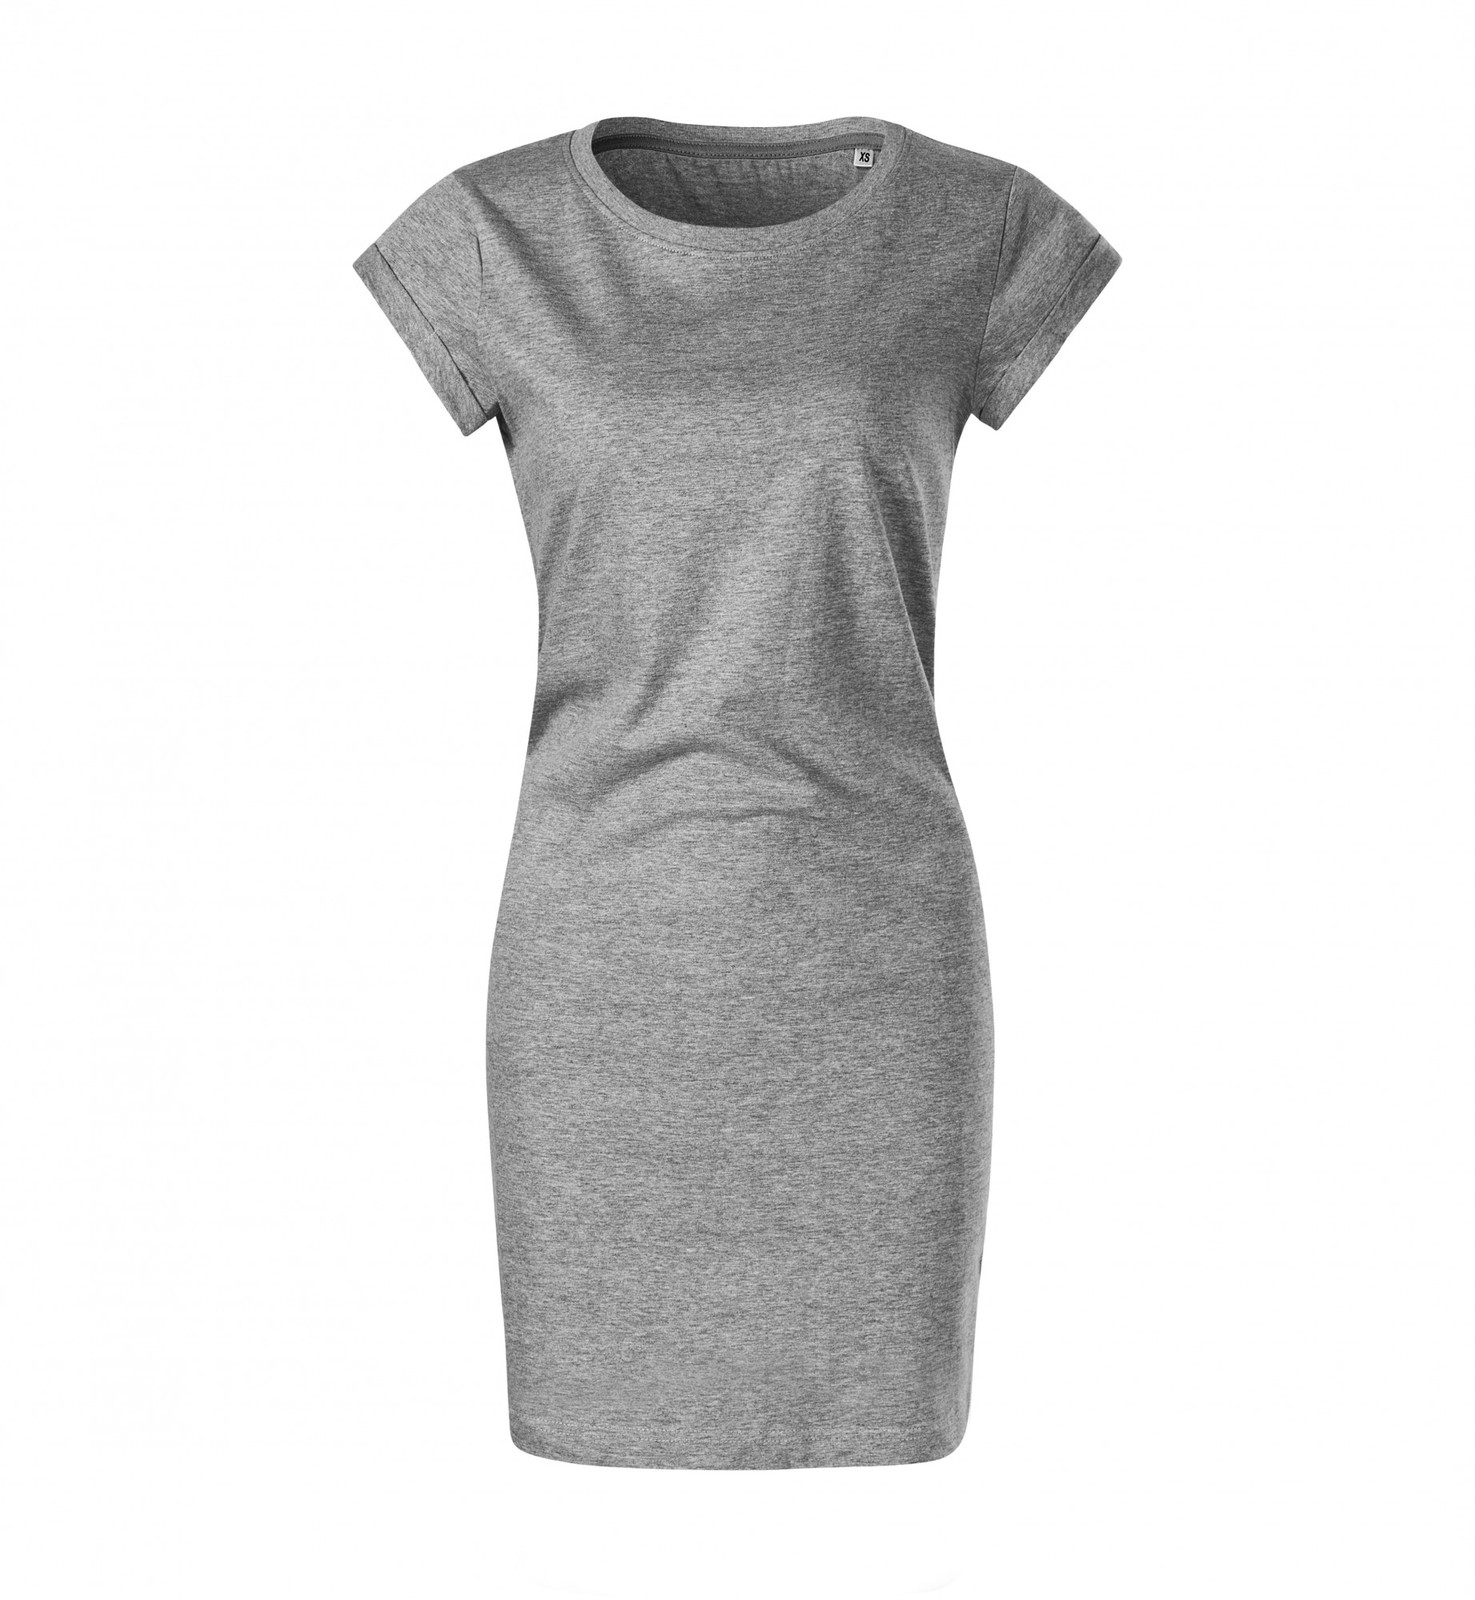 Dámske šaty Malfini Freedom 178 - veľkosť: M, farba: tmavosivý melír